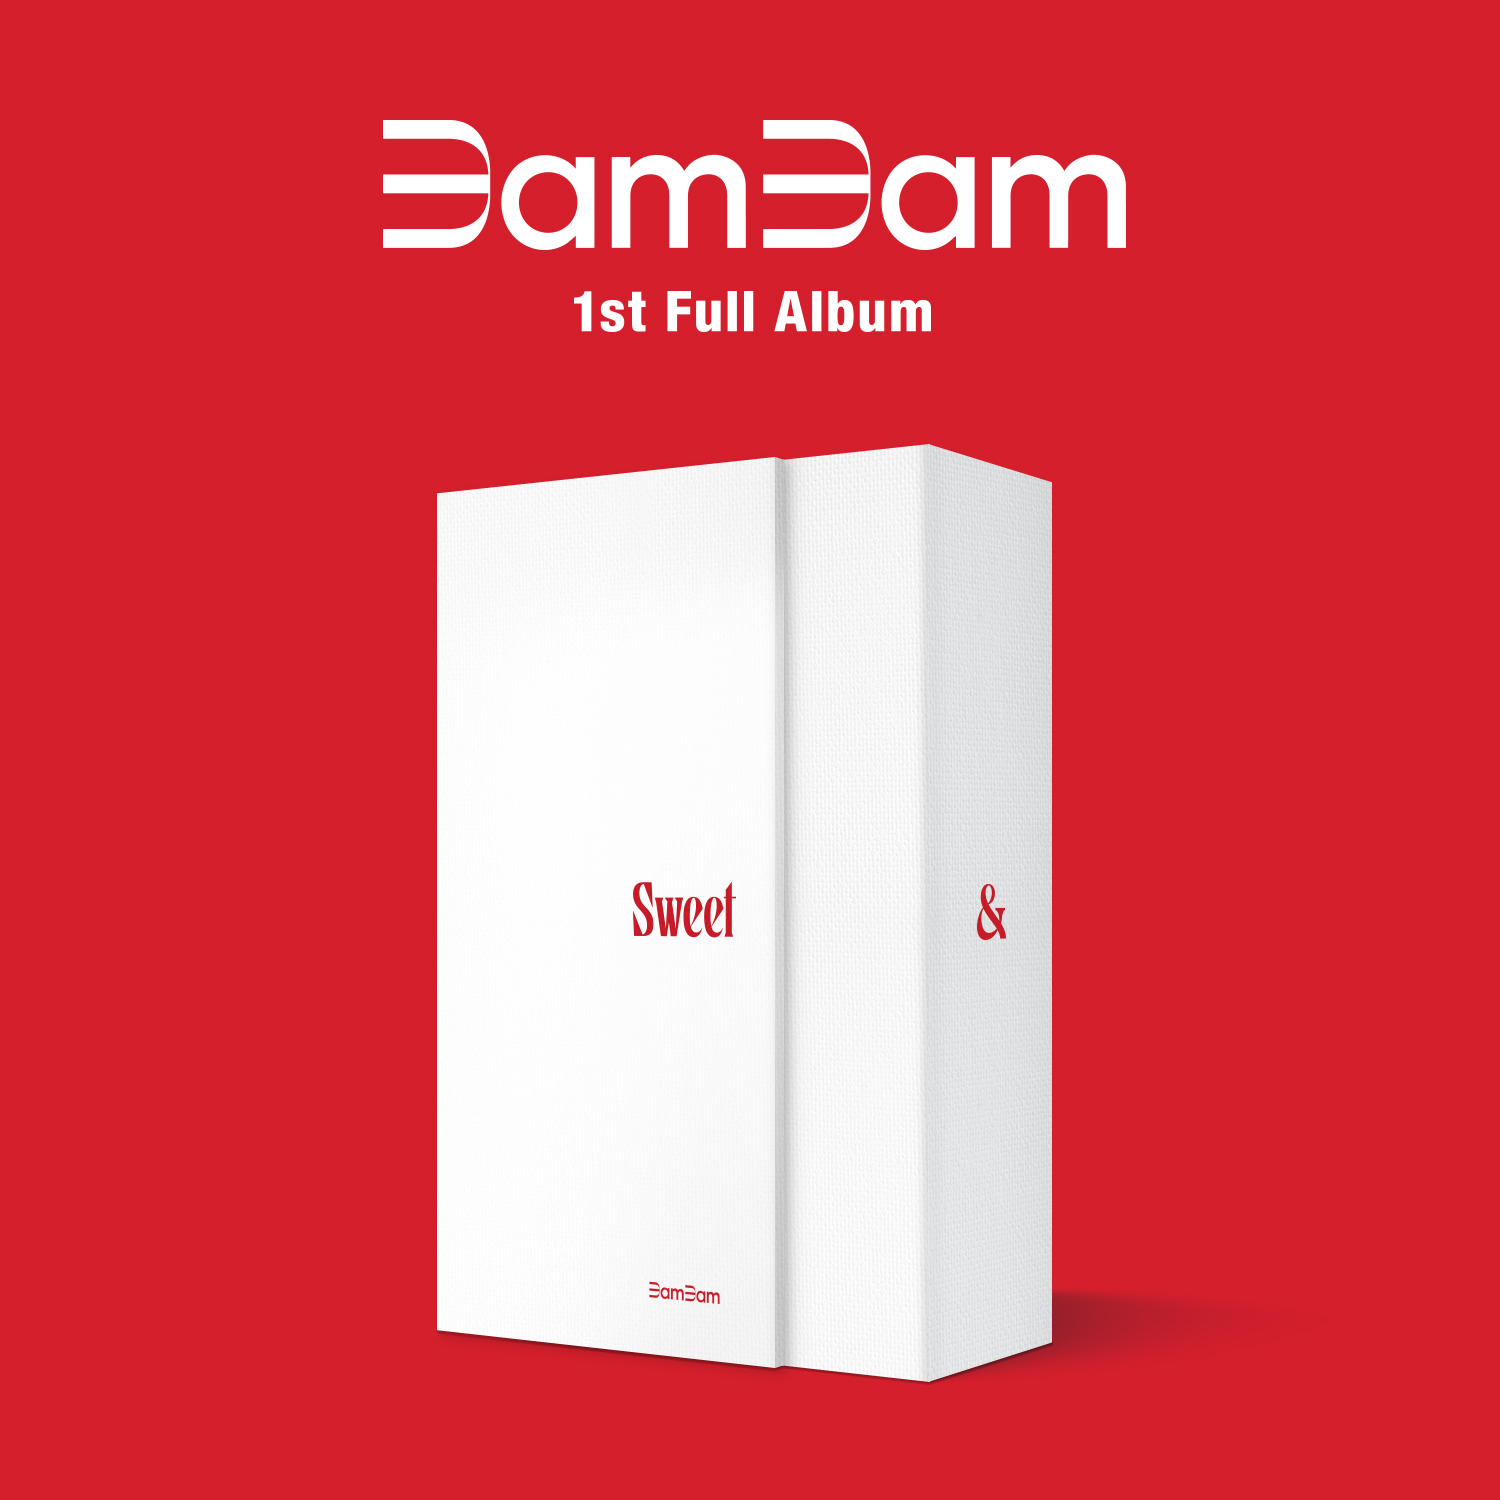 뱀뱀 (BamBam) - 정규앨범 1집 [Sour & Sweet] (Sweet 버전)